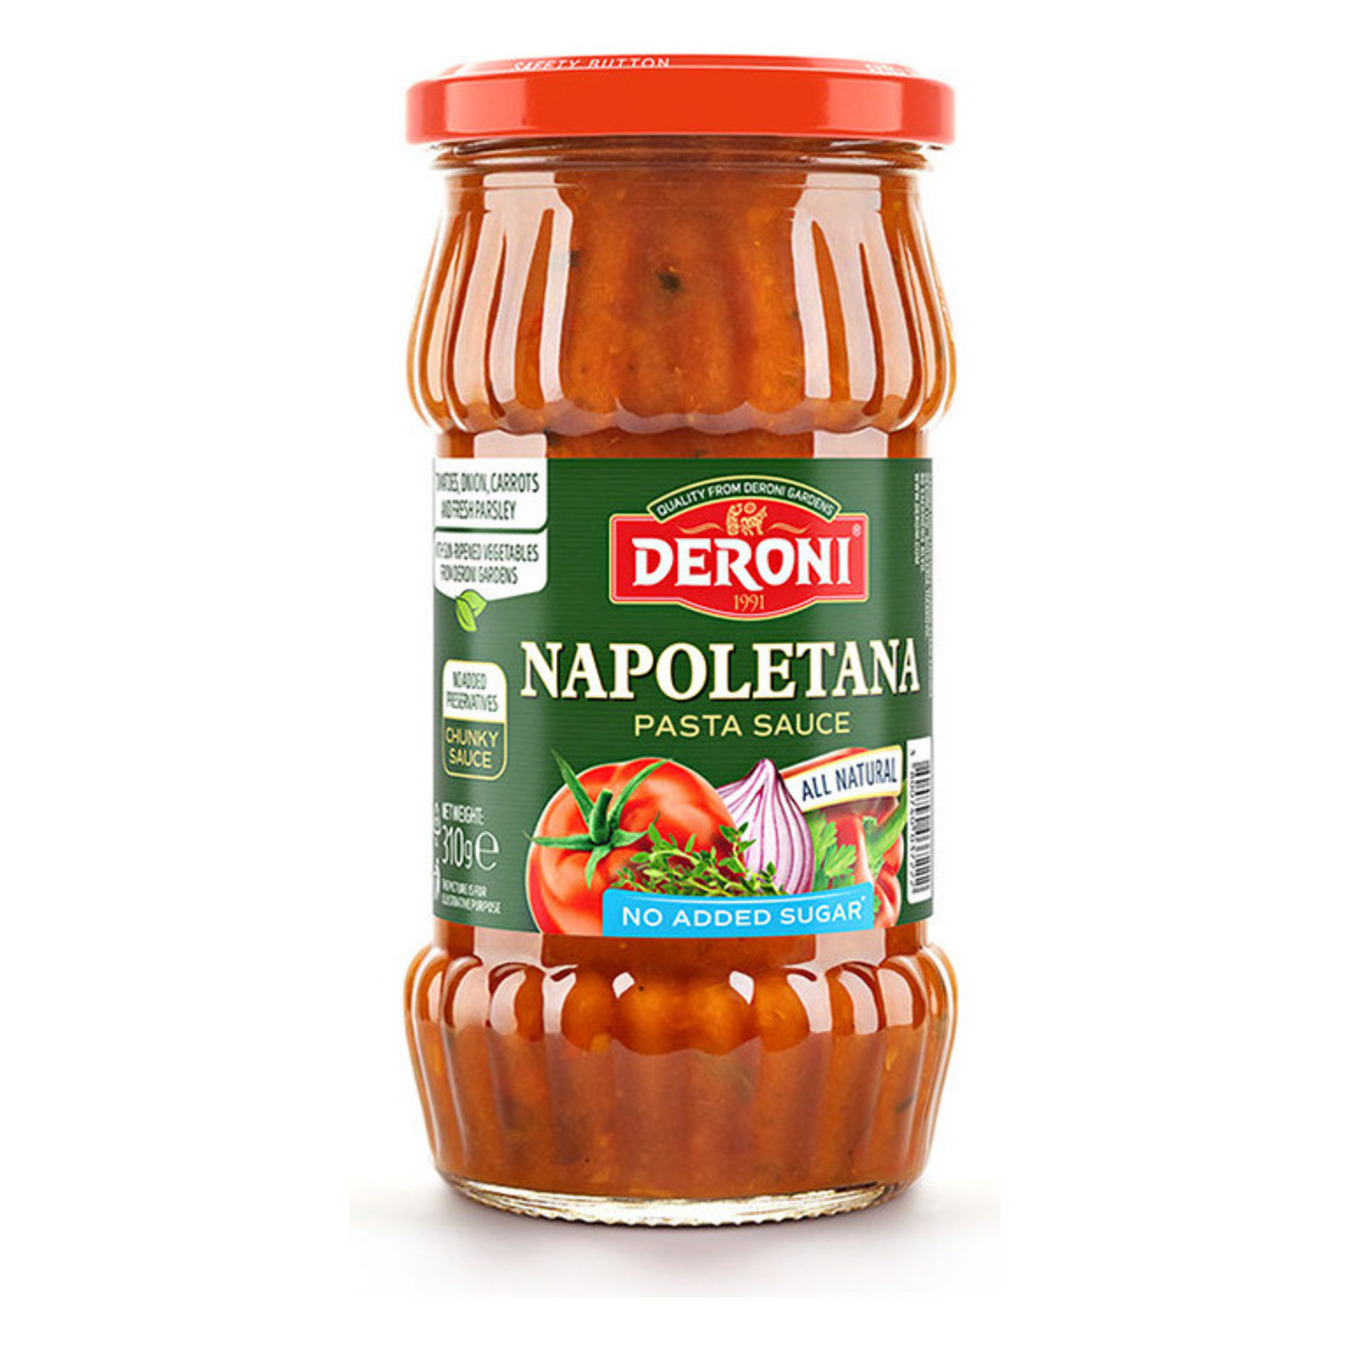 Deroni sauce for Napoletana pasta 310g